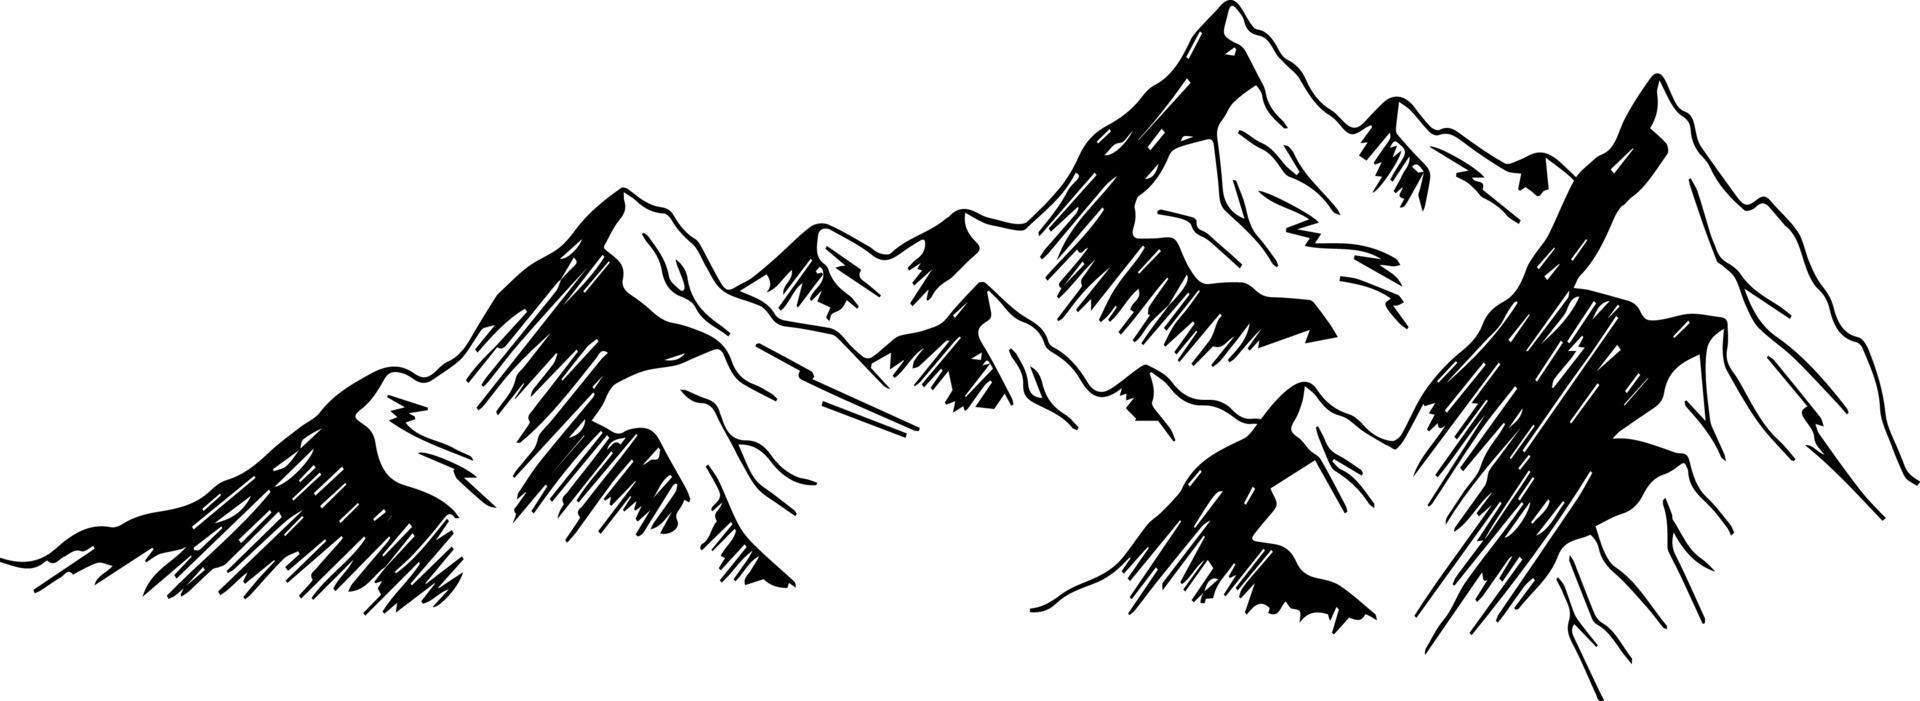 Berglandschaft Strichzeichnungen. minimaler umrissvektorhintergrund mit bergketten vektor